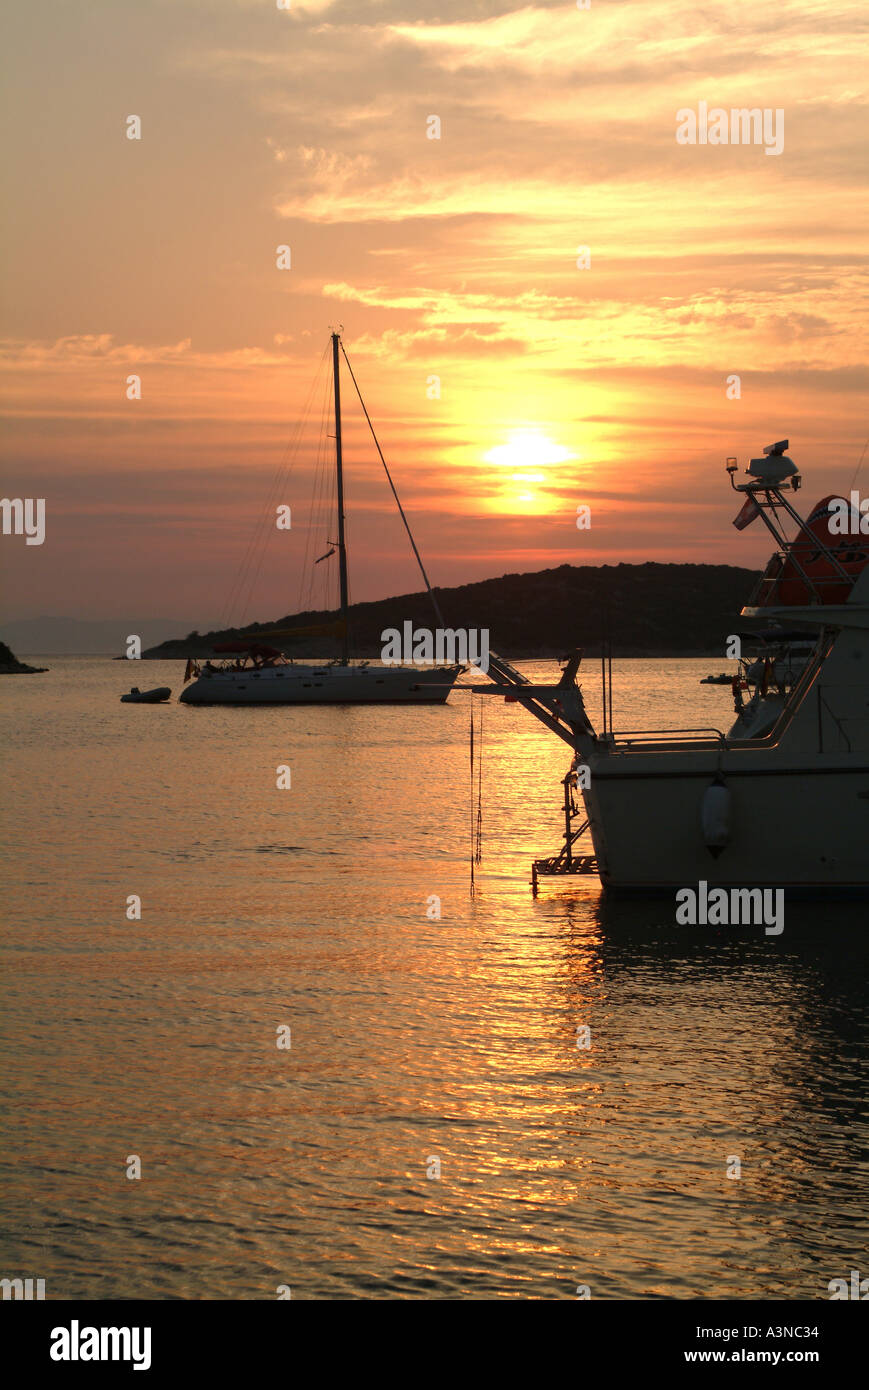 Location de bateau à moteur et au coucher du soleil dans la baie de Soline off otok croatie Split Banque D'Images